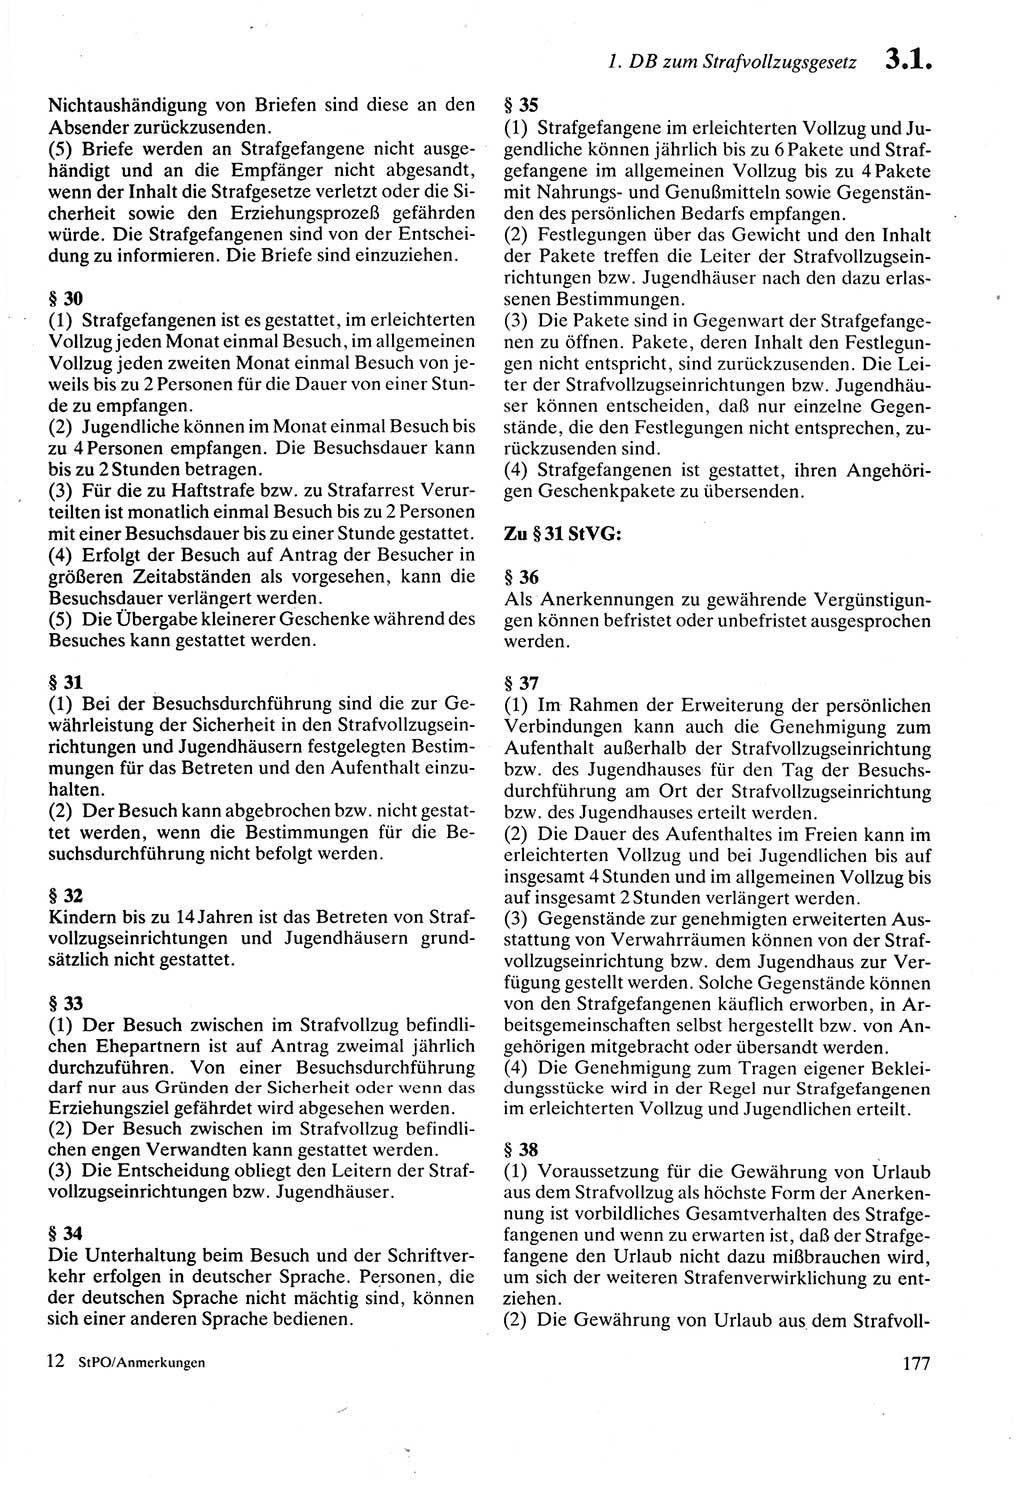 Strafprozeßordnung (StPO) der Deutschen Demokratischen Republik (DDR) sowie angrenzende Gesetze und Bestimmungen 1987, Seite 177 (StPO DDR Ges. Best. 1987, S. 177)